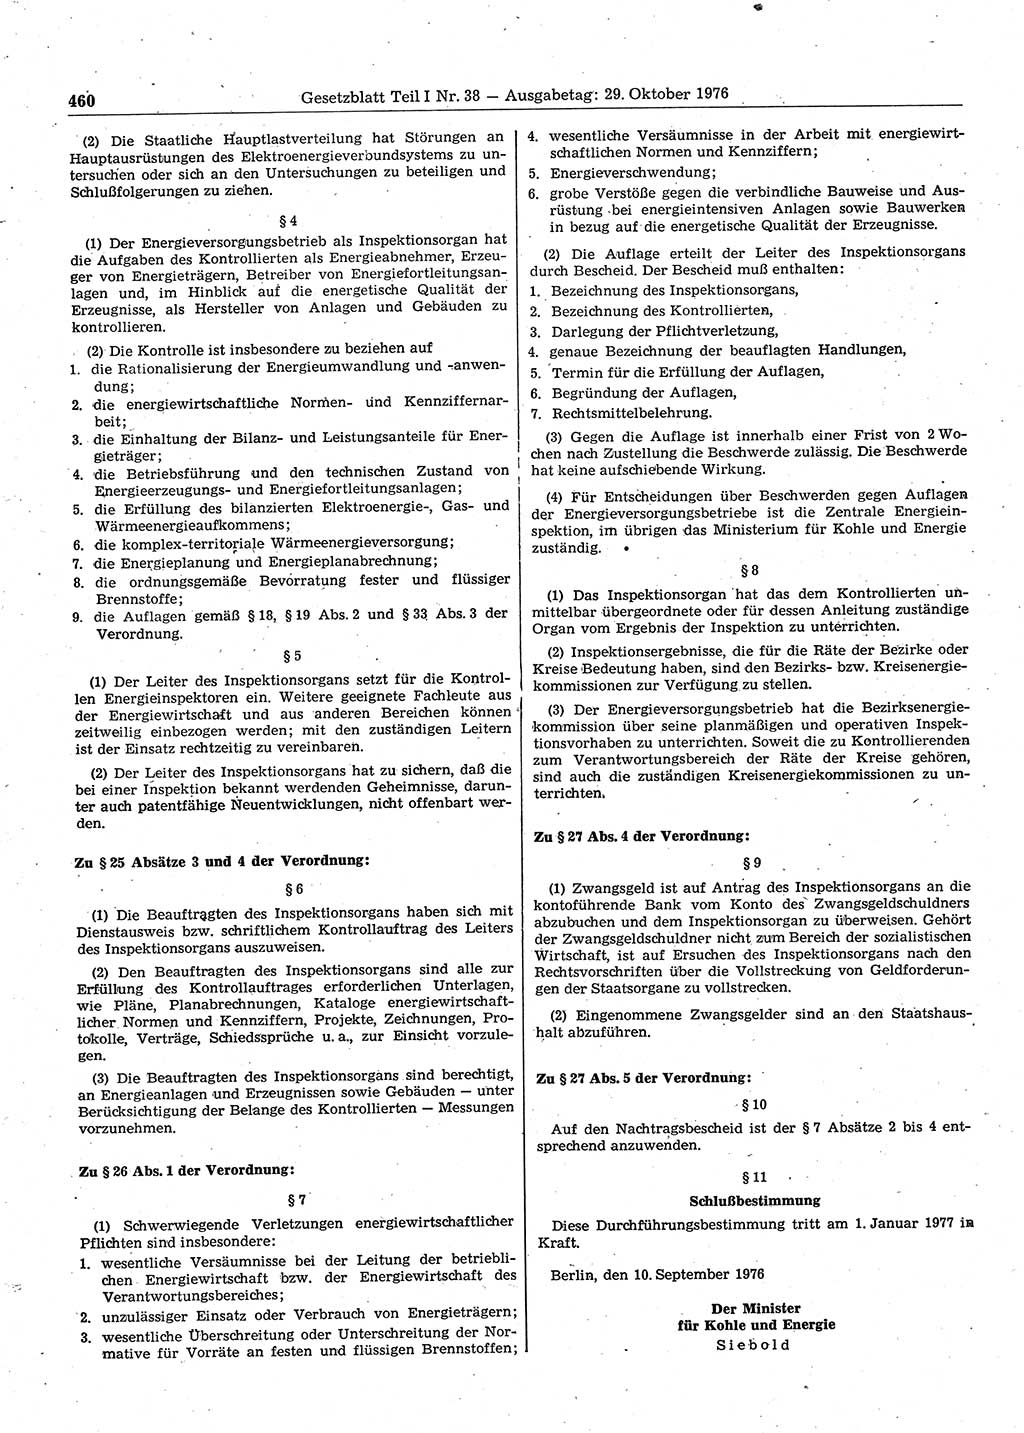 Gesetzblatt (GBl.) der Deutschen Demokratischen Republik (DDR) Teil Ⅰ 1976, Seite 460 (GBl. DDR Ⅰ 1976, S. 460)